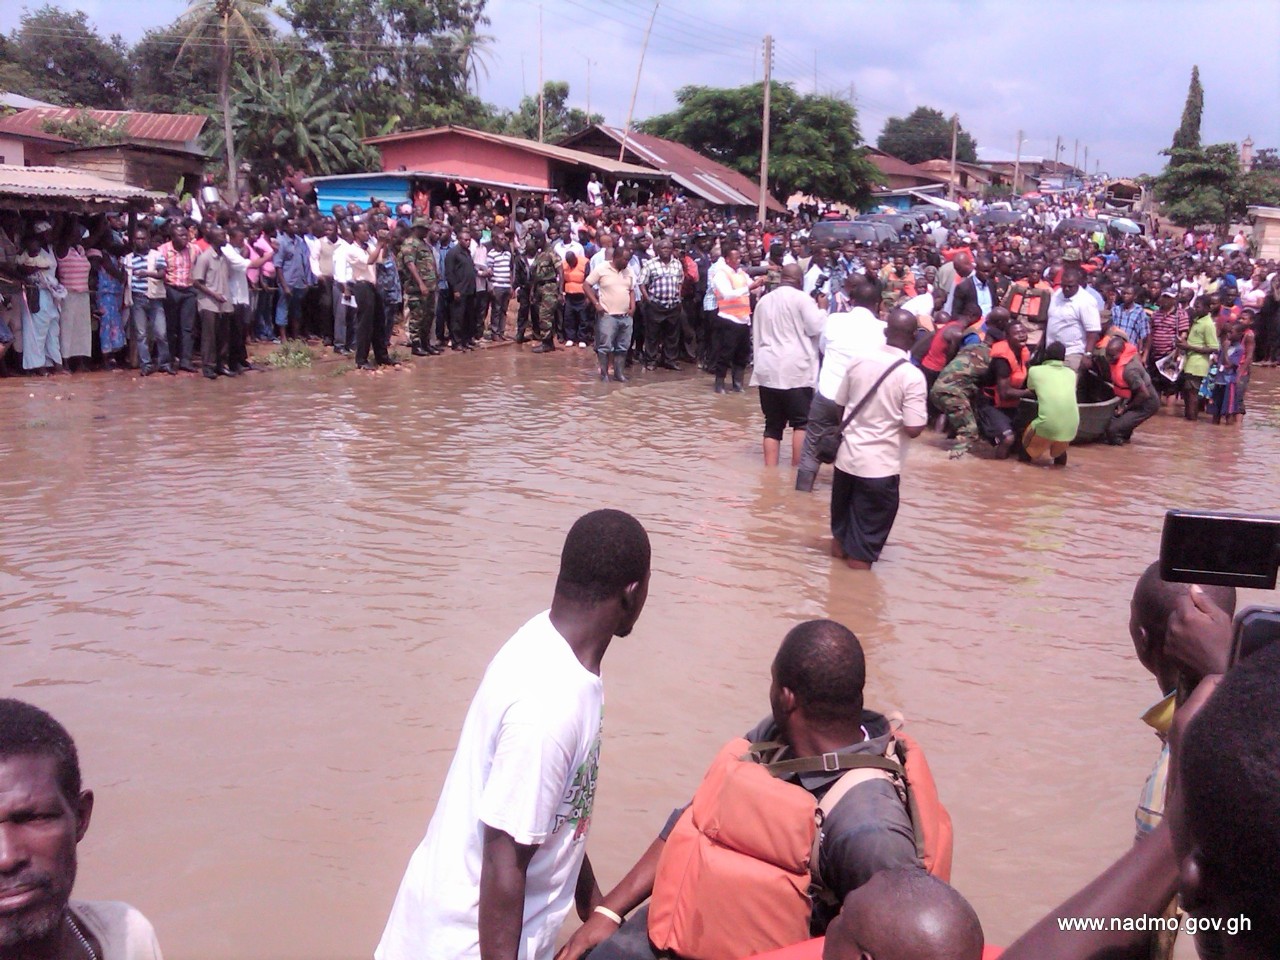 Flooding in Ghana